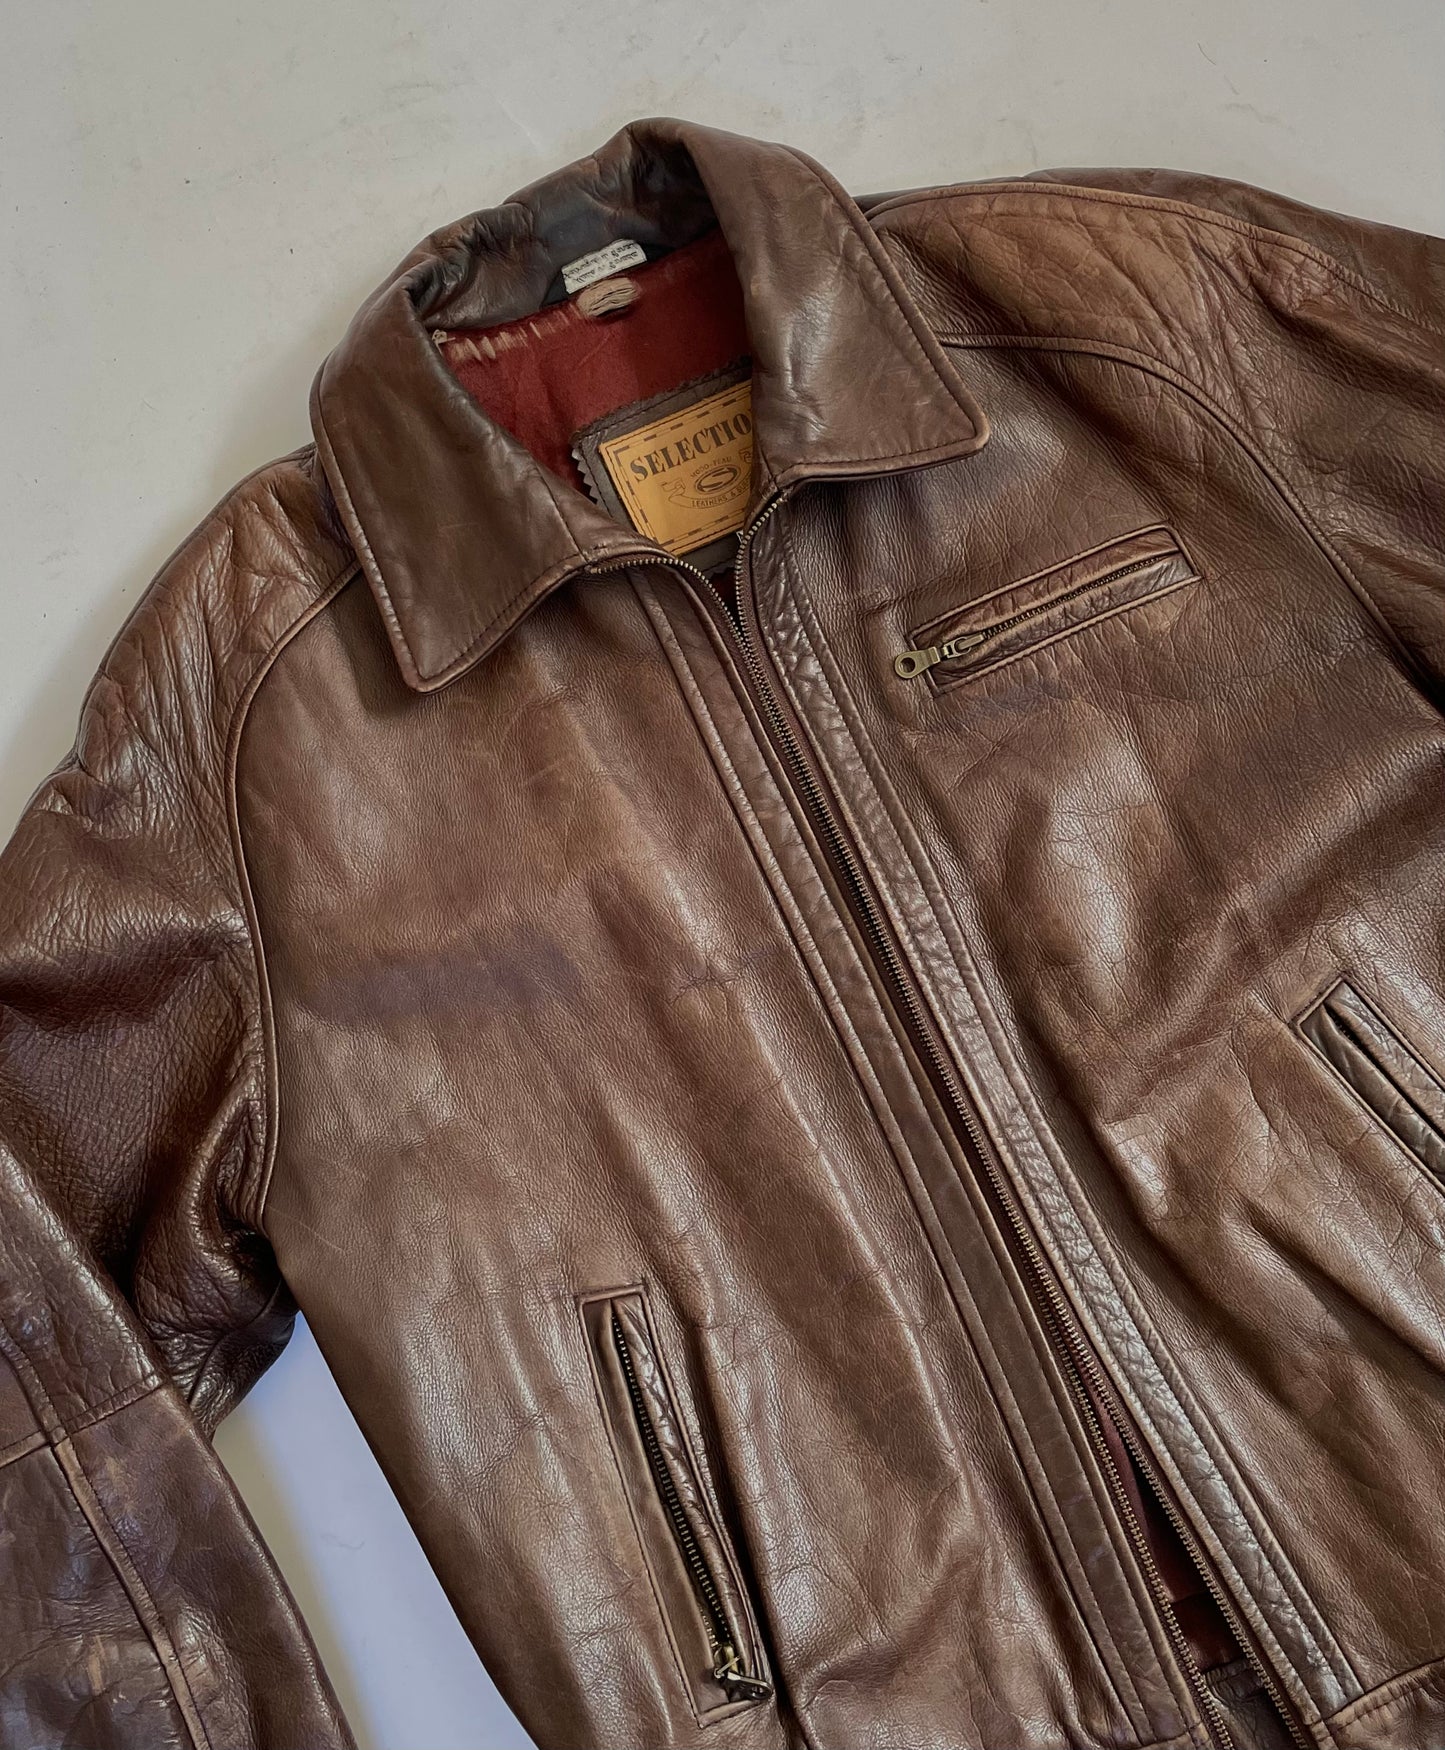 Vintage oversized brown leather jacket